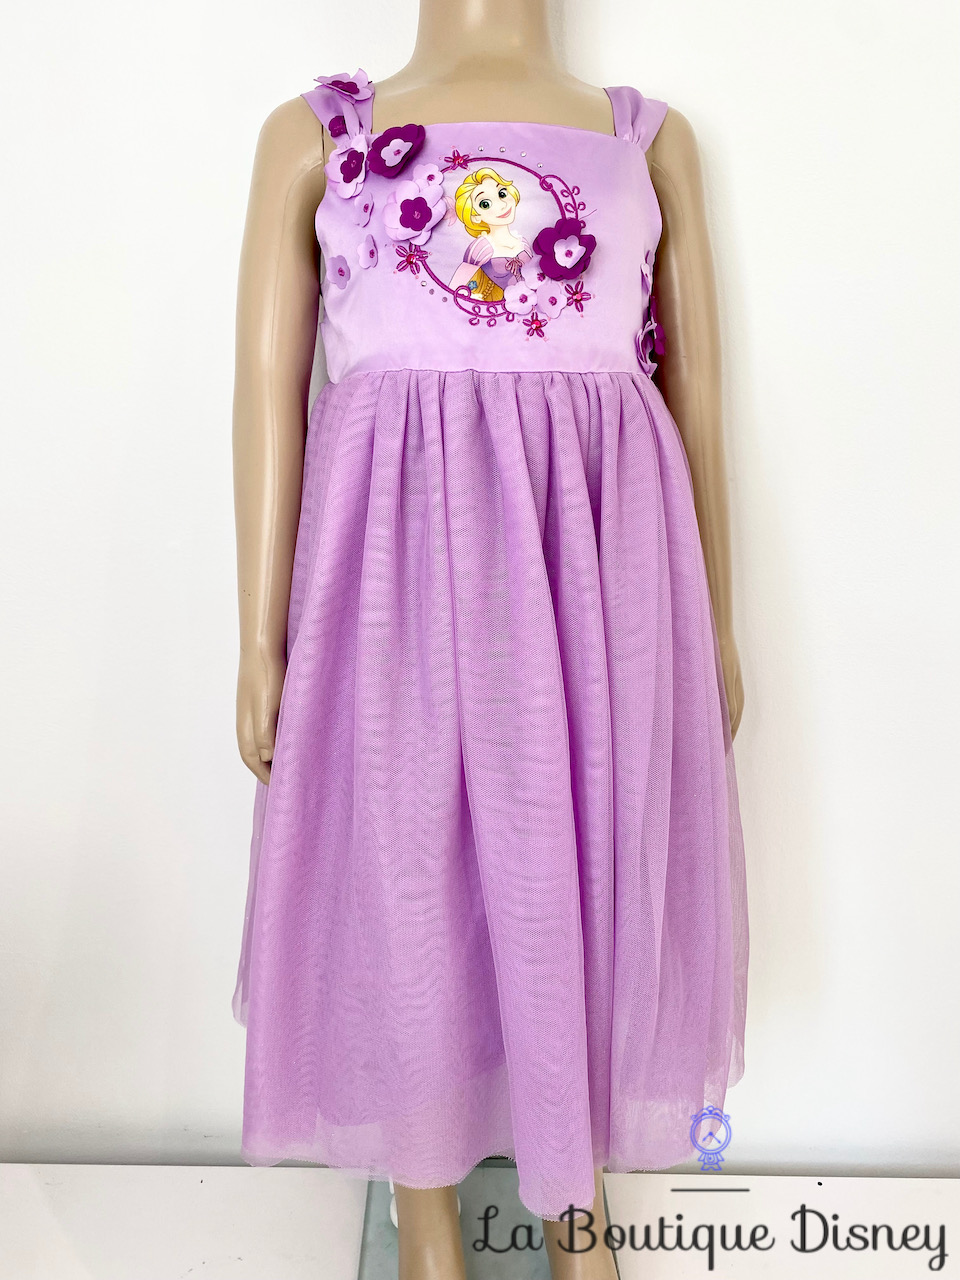 Déguisement Raiponce Disney Store taille 5-6 ans robe princesse violet  tulle fleurs - Déguisements/Taille 4 à 6 ans - La Boutique Disney